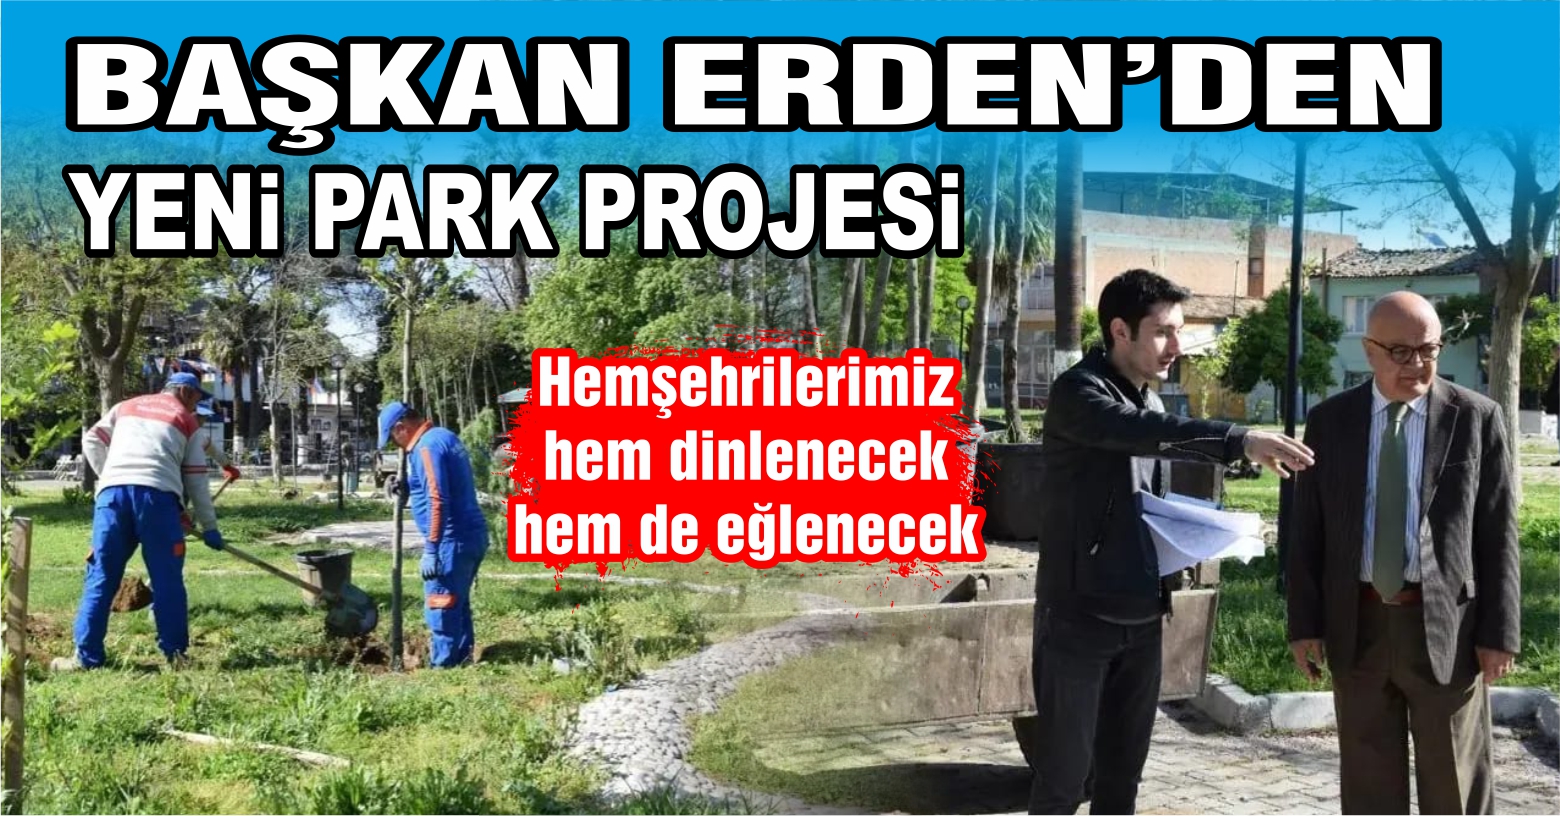 Başkan Erden’den Yeni Park Projesi